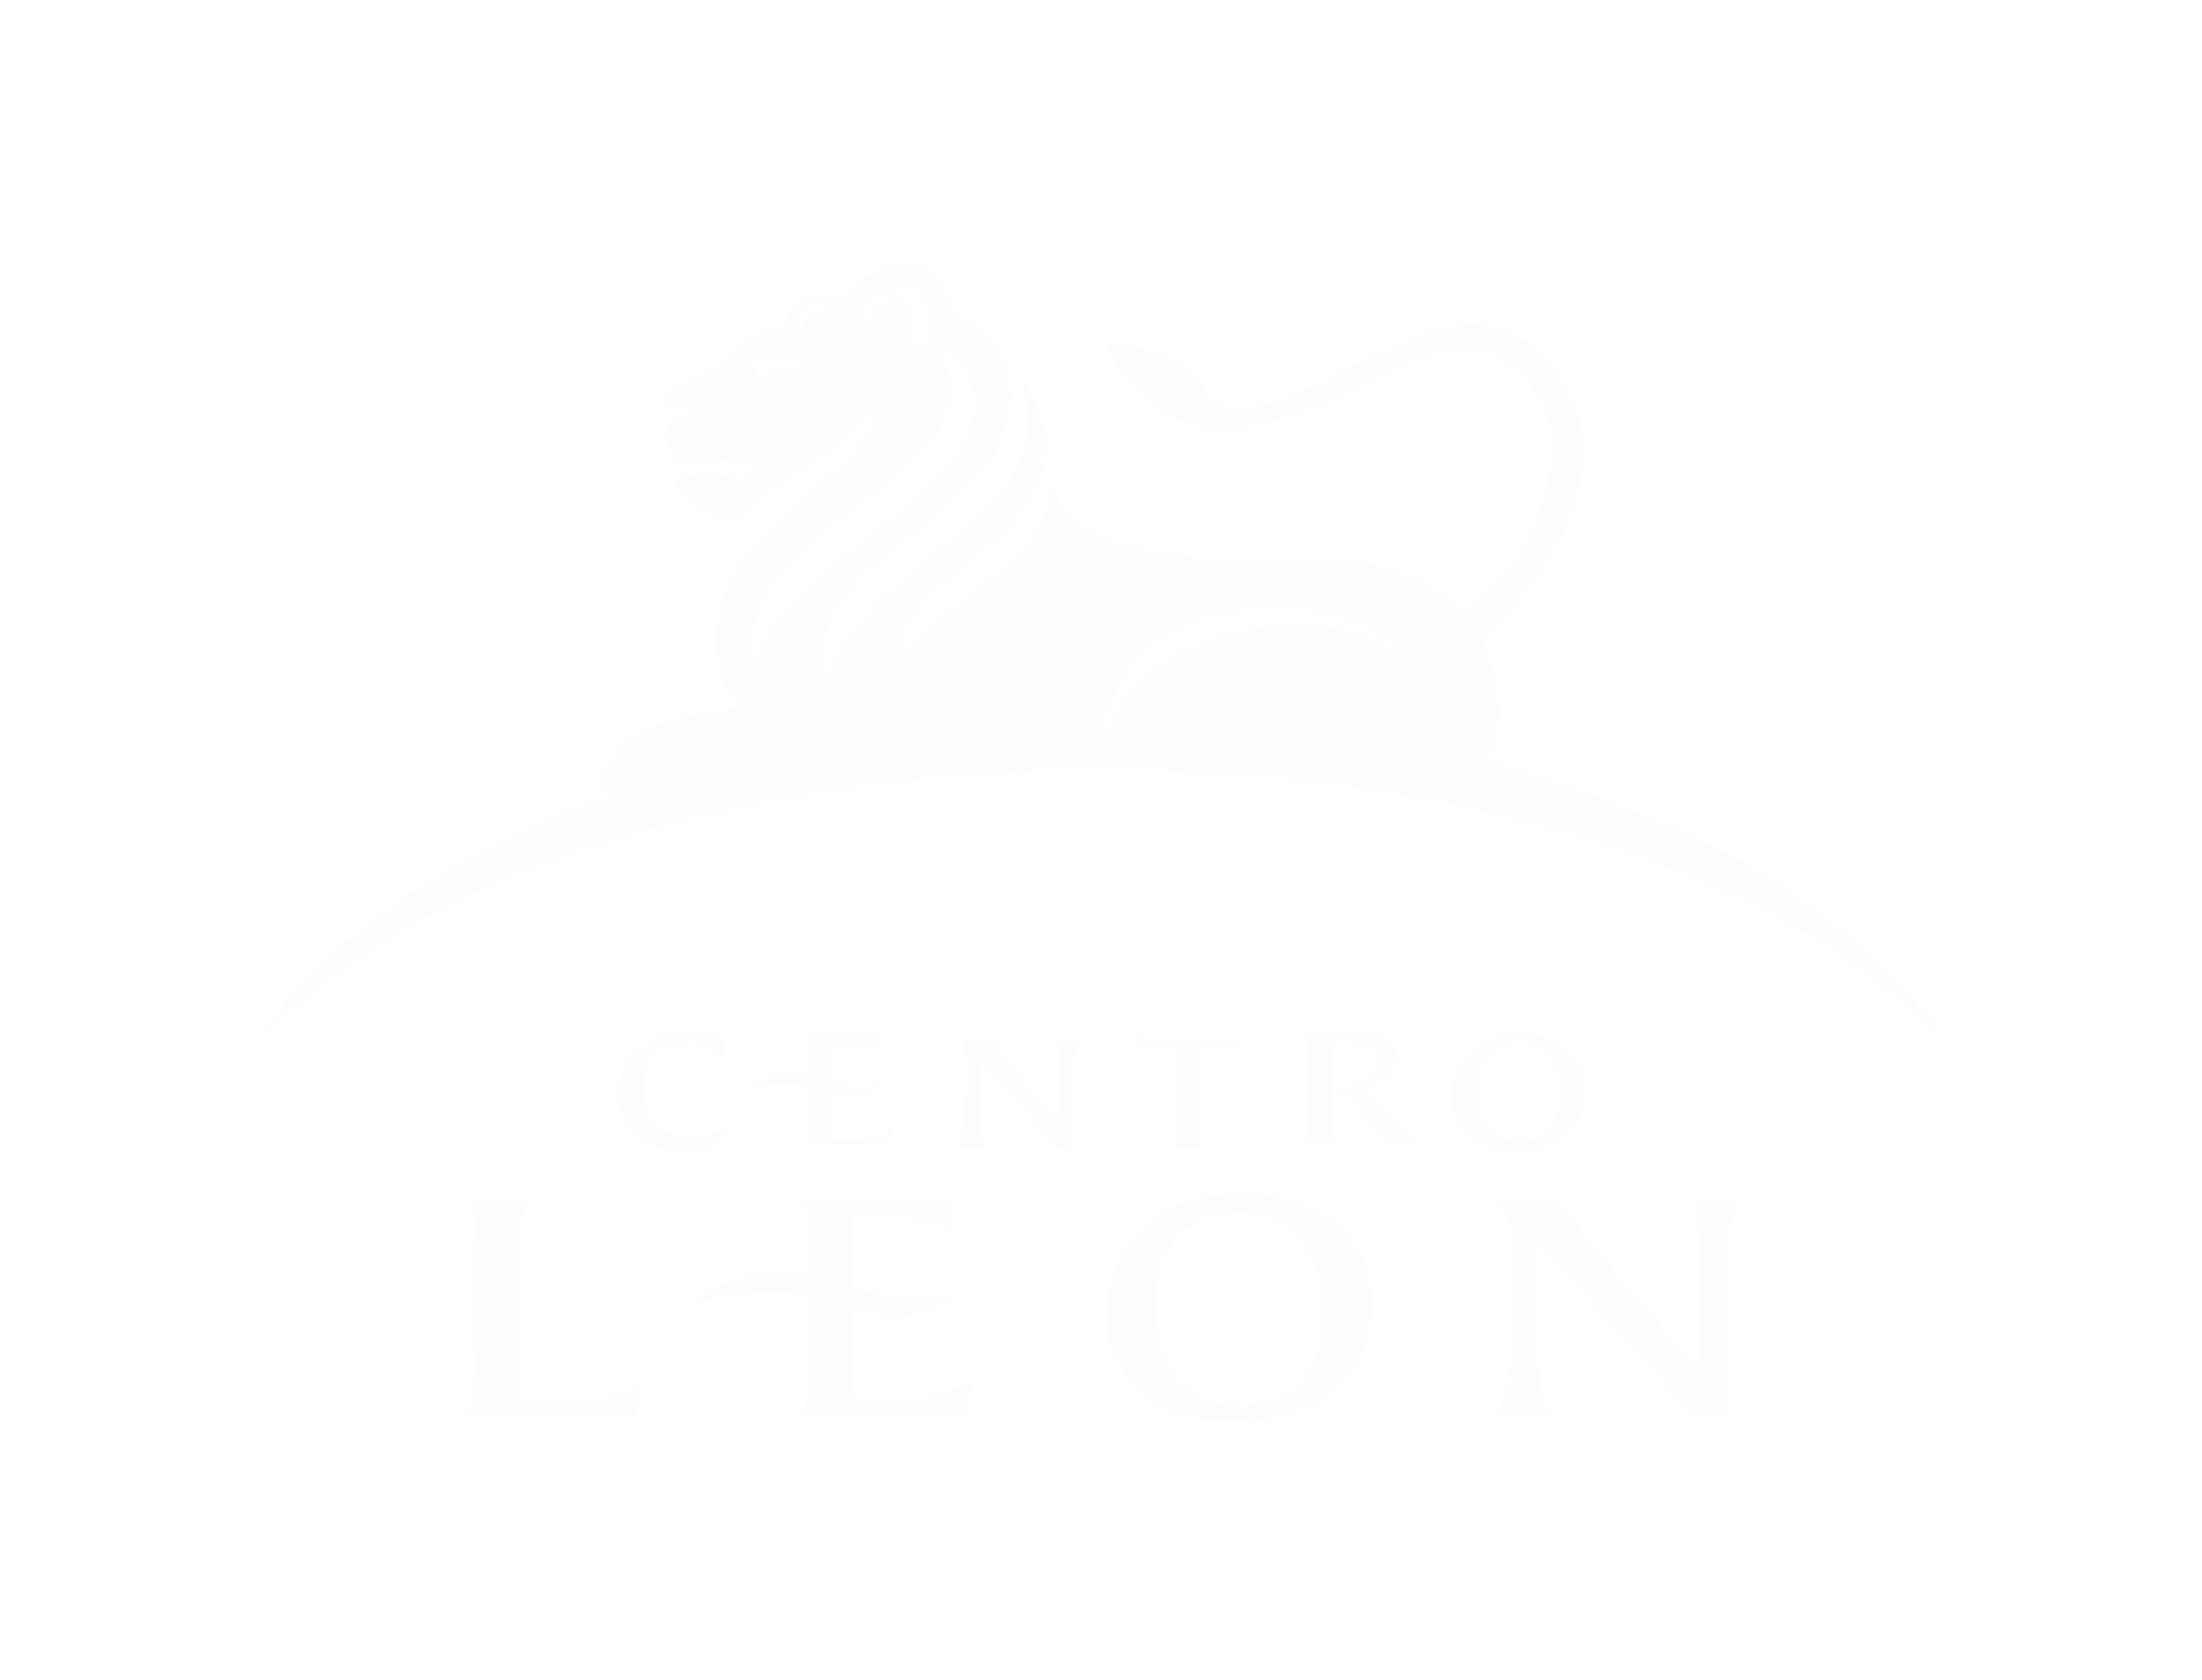 Centro León